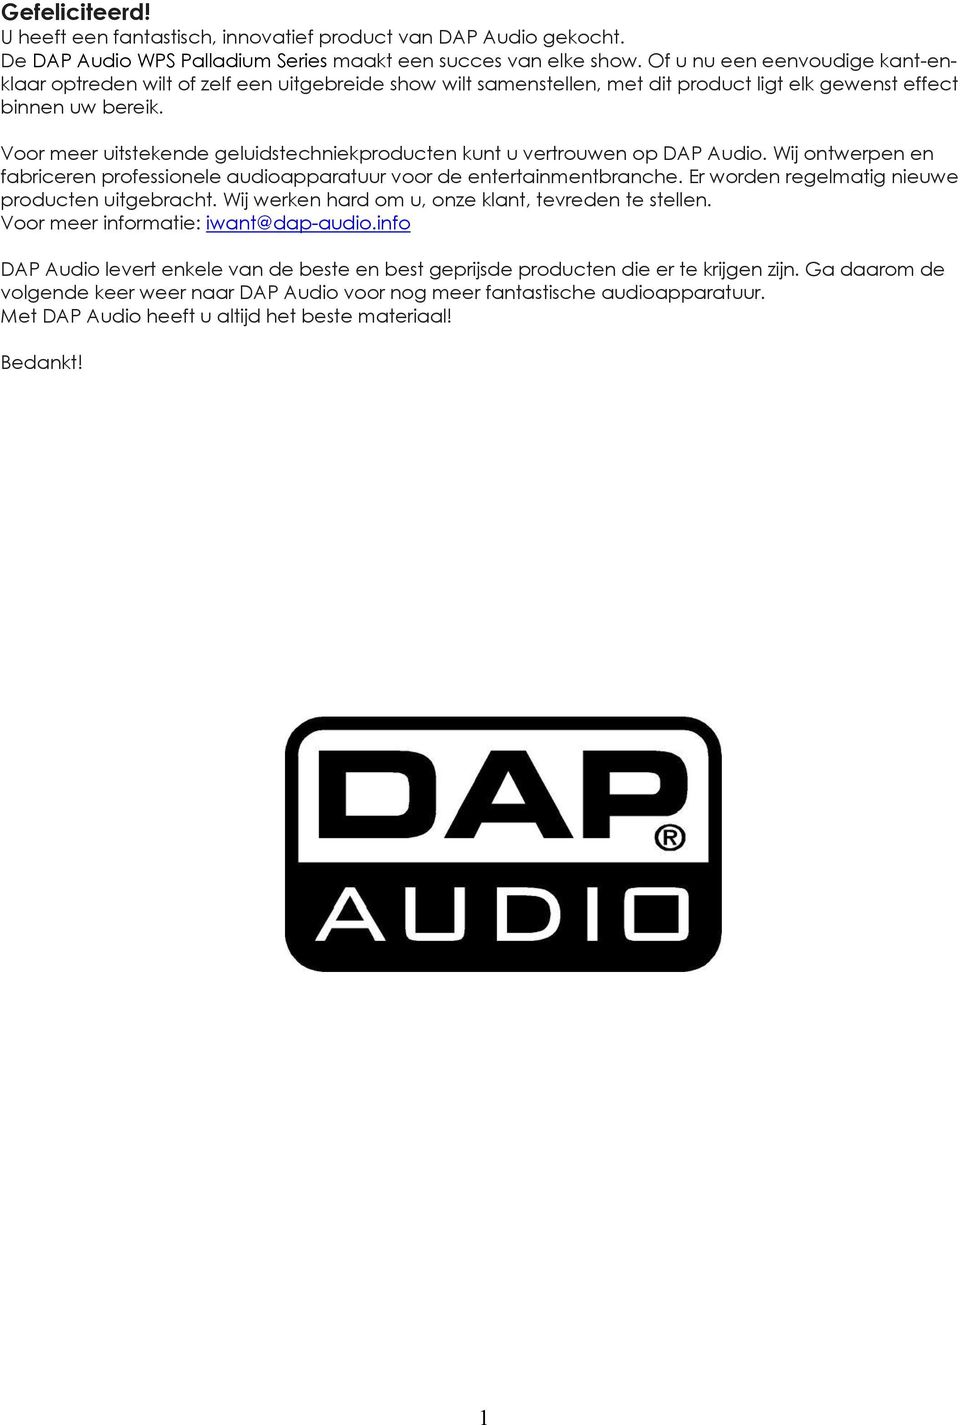 Voor meer uitstekende geluidstechniekproducten kunt u vertrouwen op DAP Audio. Wij ontwerpen en fabriceren professionele audioapparatuur voor de entertainmentbranche.